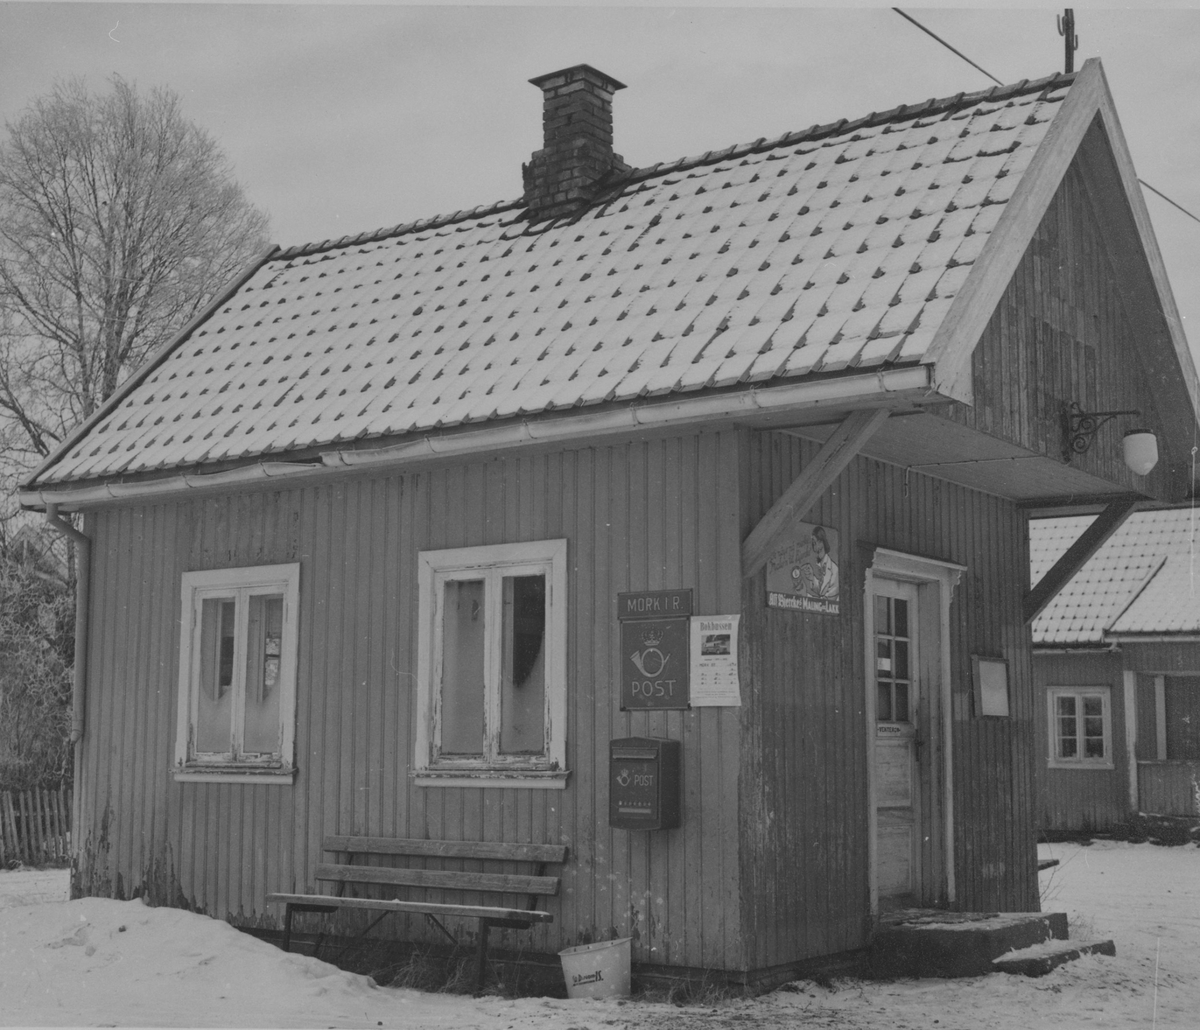 Mork stasjon på nedlagte Urskog-Hølandsbanen, her som poståpneri